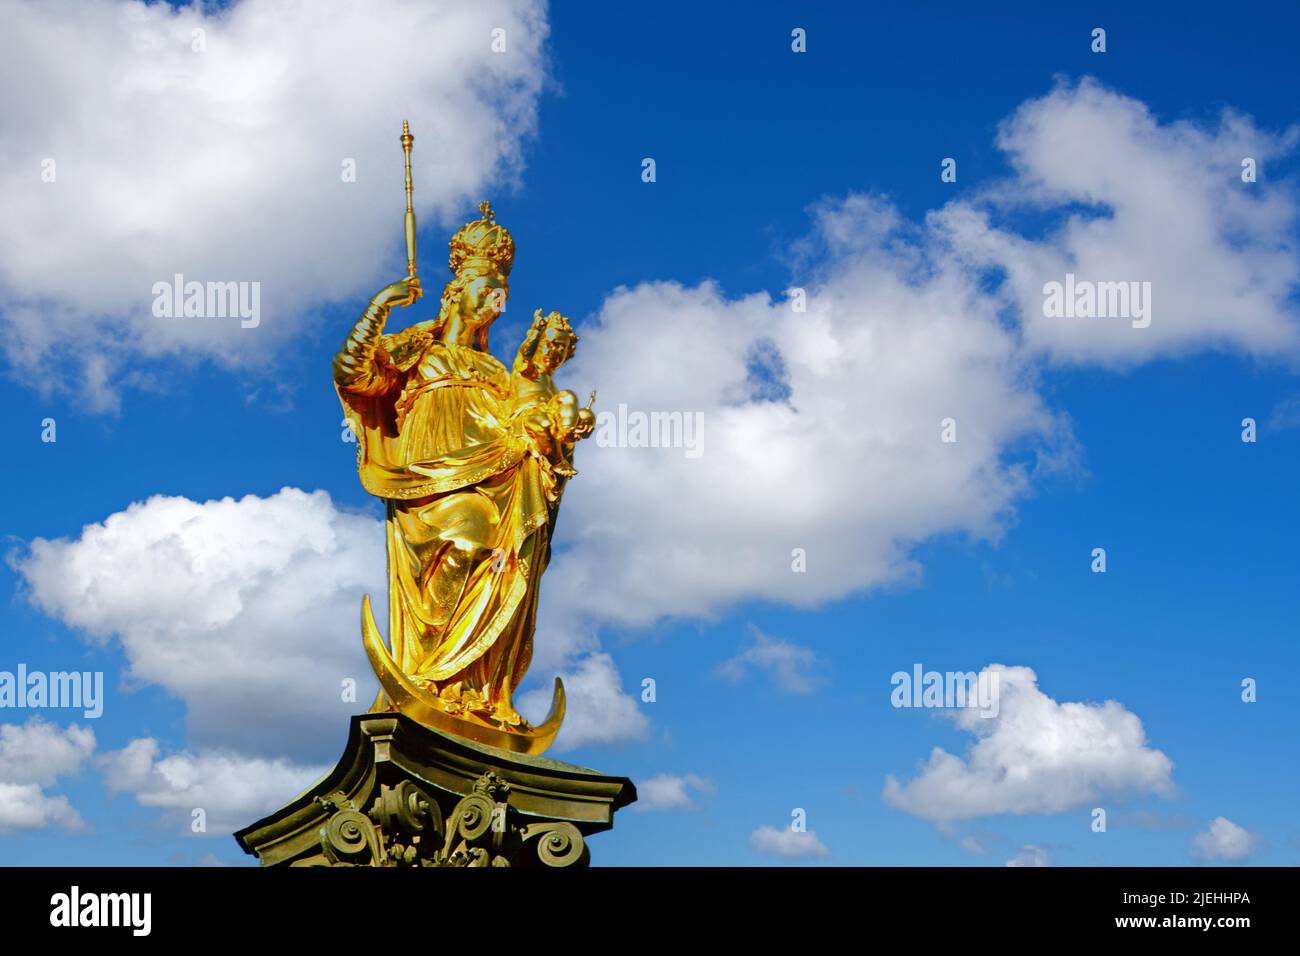 Deutschland, München, Marienplatz, Mariensäule, goldene Statue der Maria Stock Photo